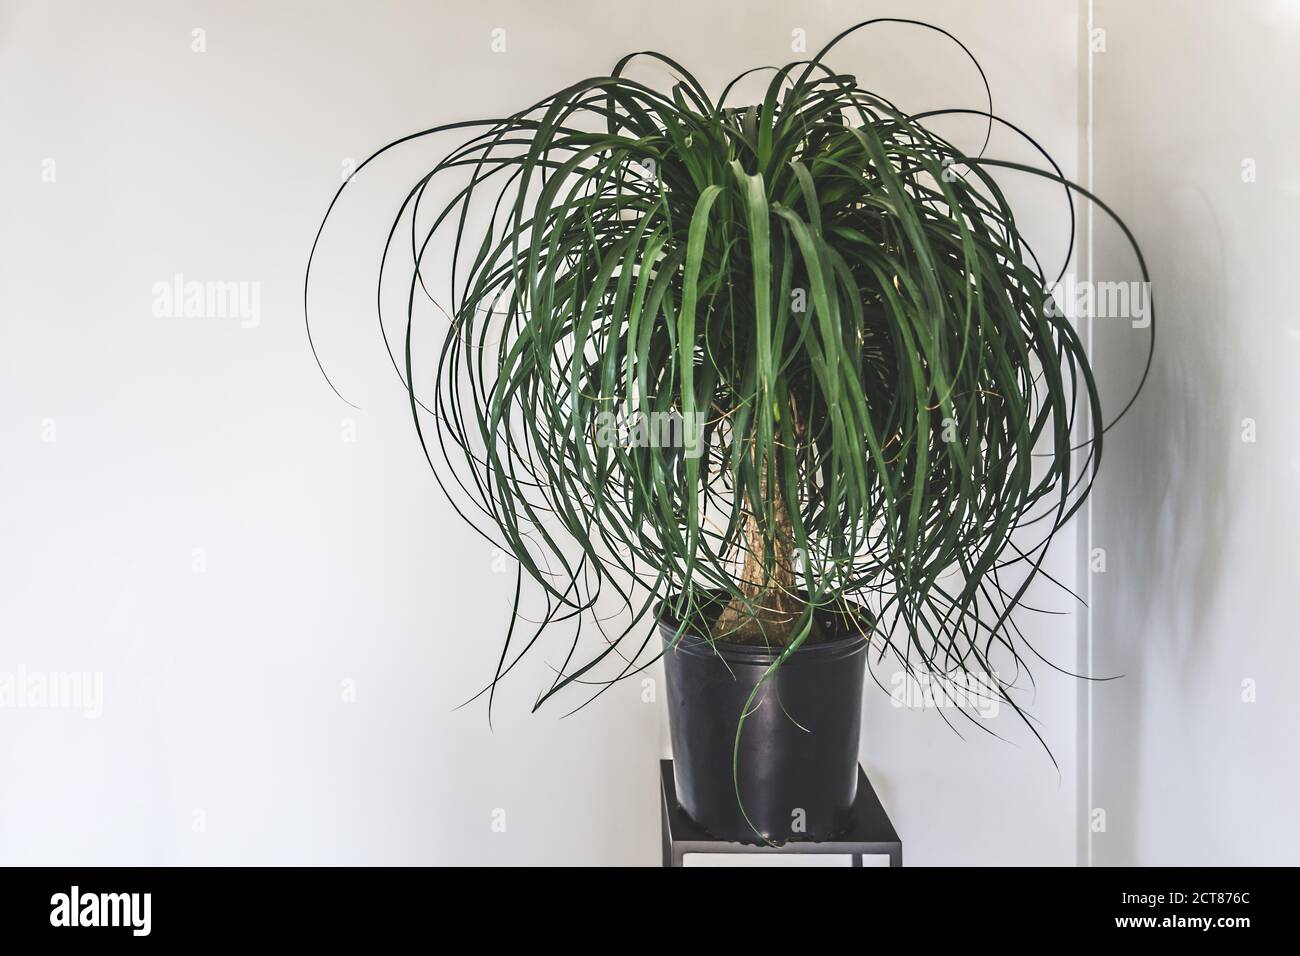 Reinigen Sie den Innenraum mit Standfuß und Pferdeschwanz Palme Pflanze auf  leer Weißer Wandhintergrund für Text Stockfotografie - Alamy